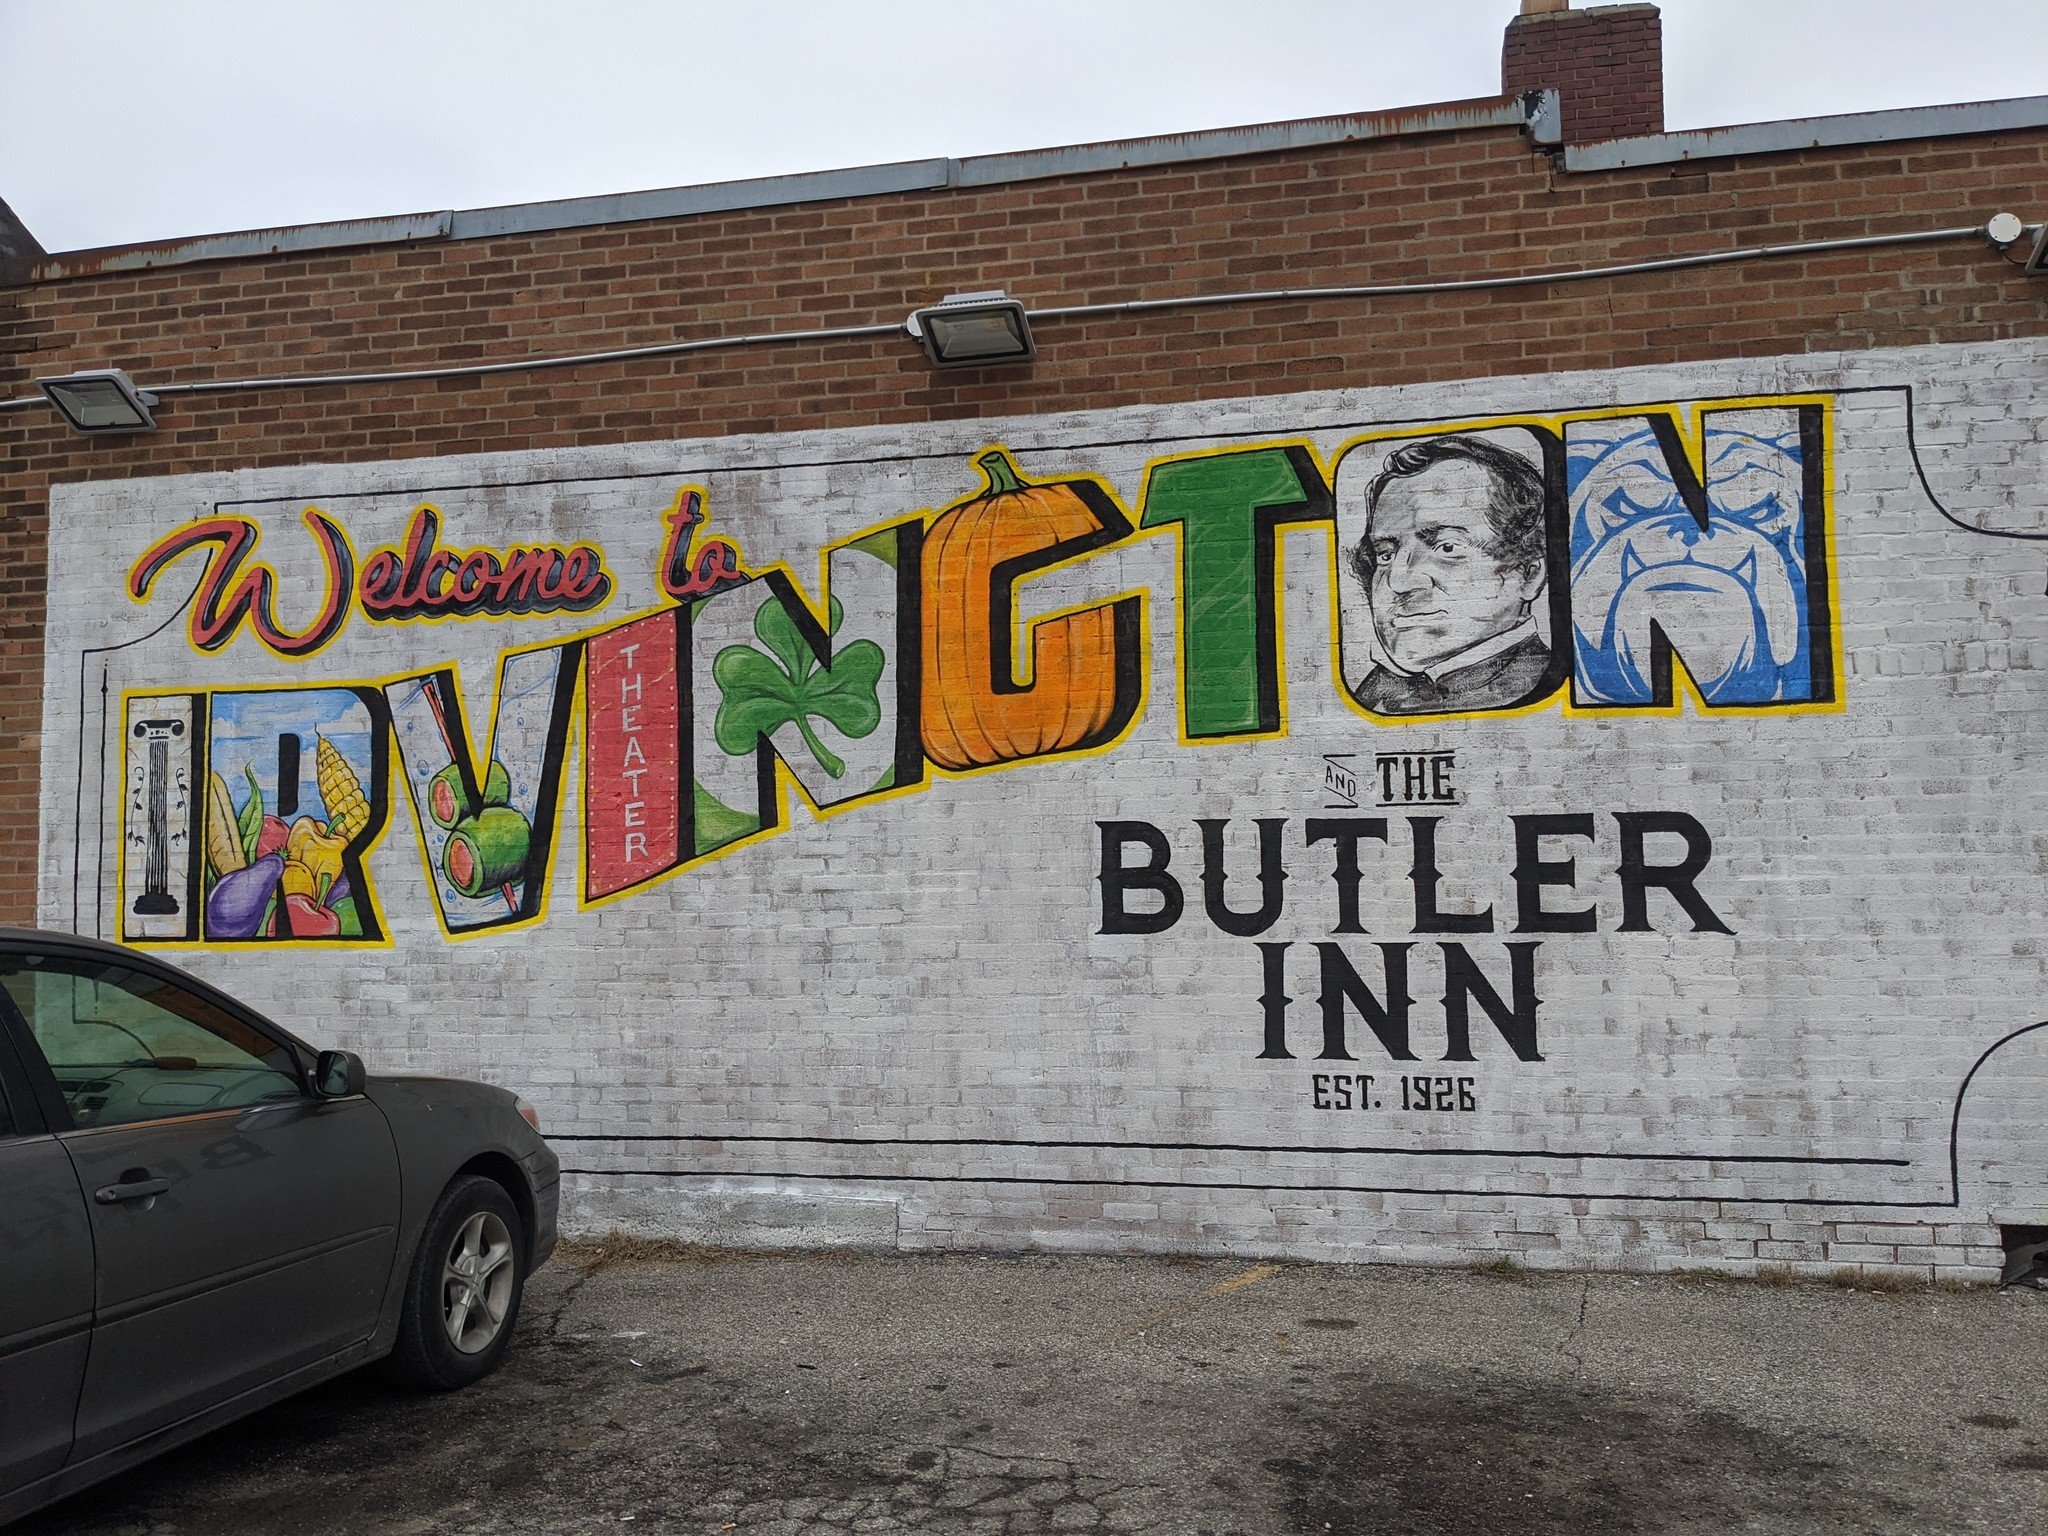 Butler Inn shot on the Pixel 4